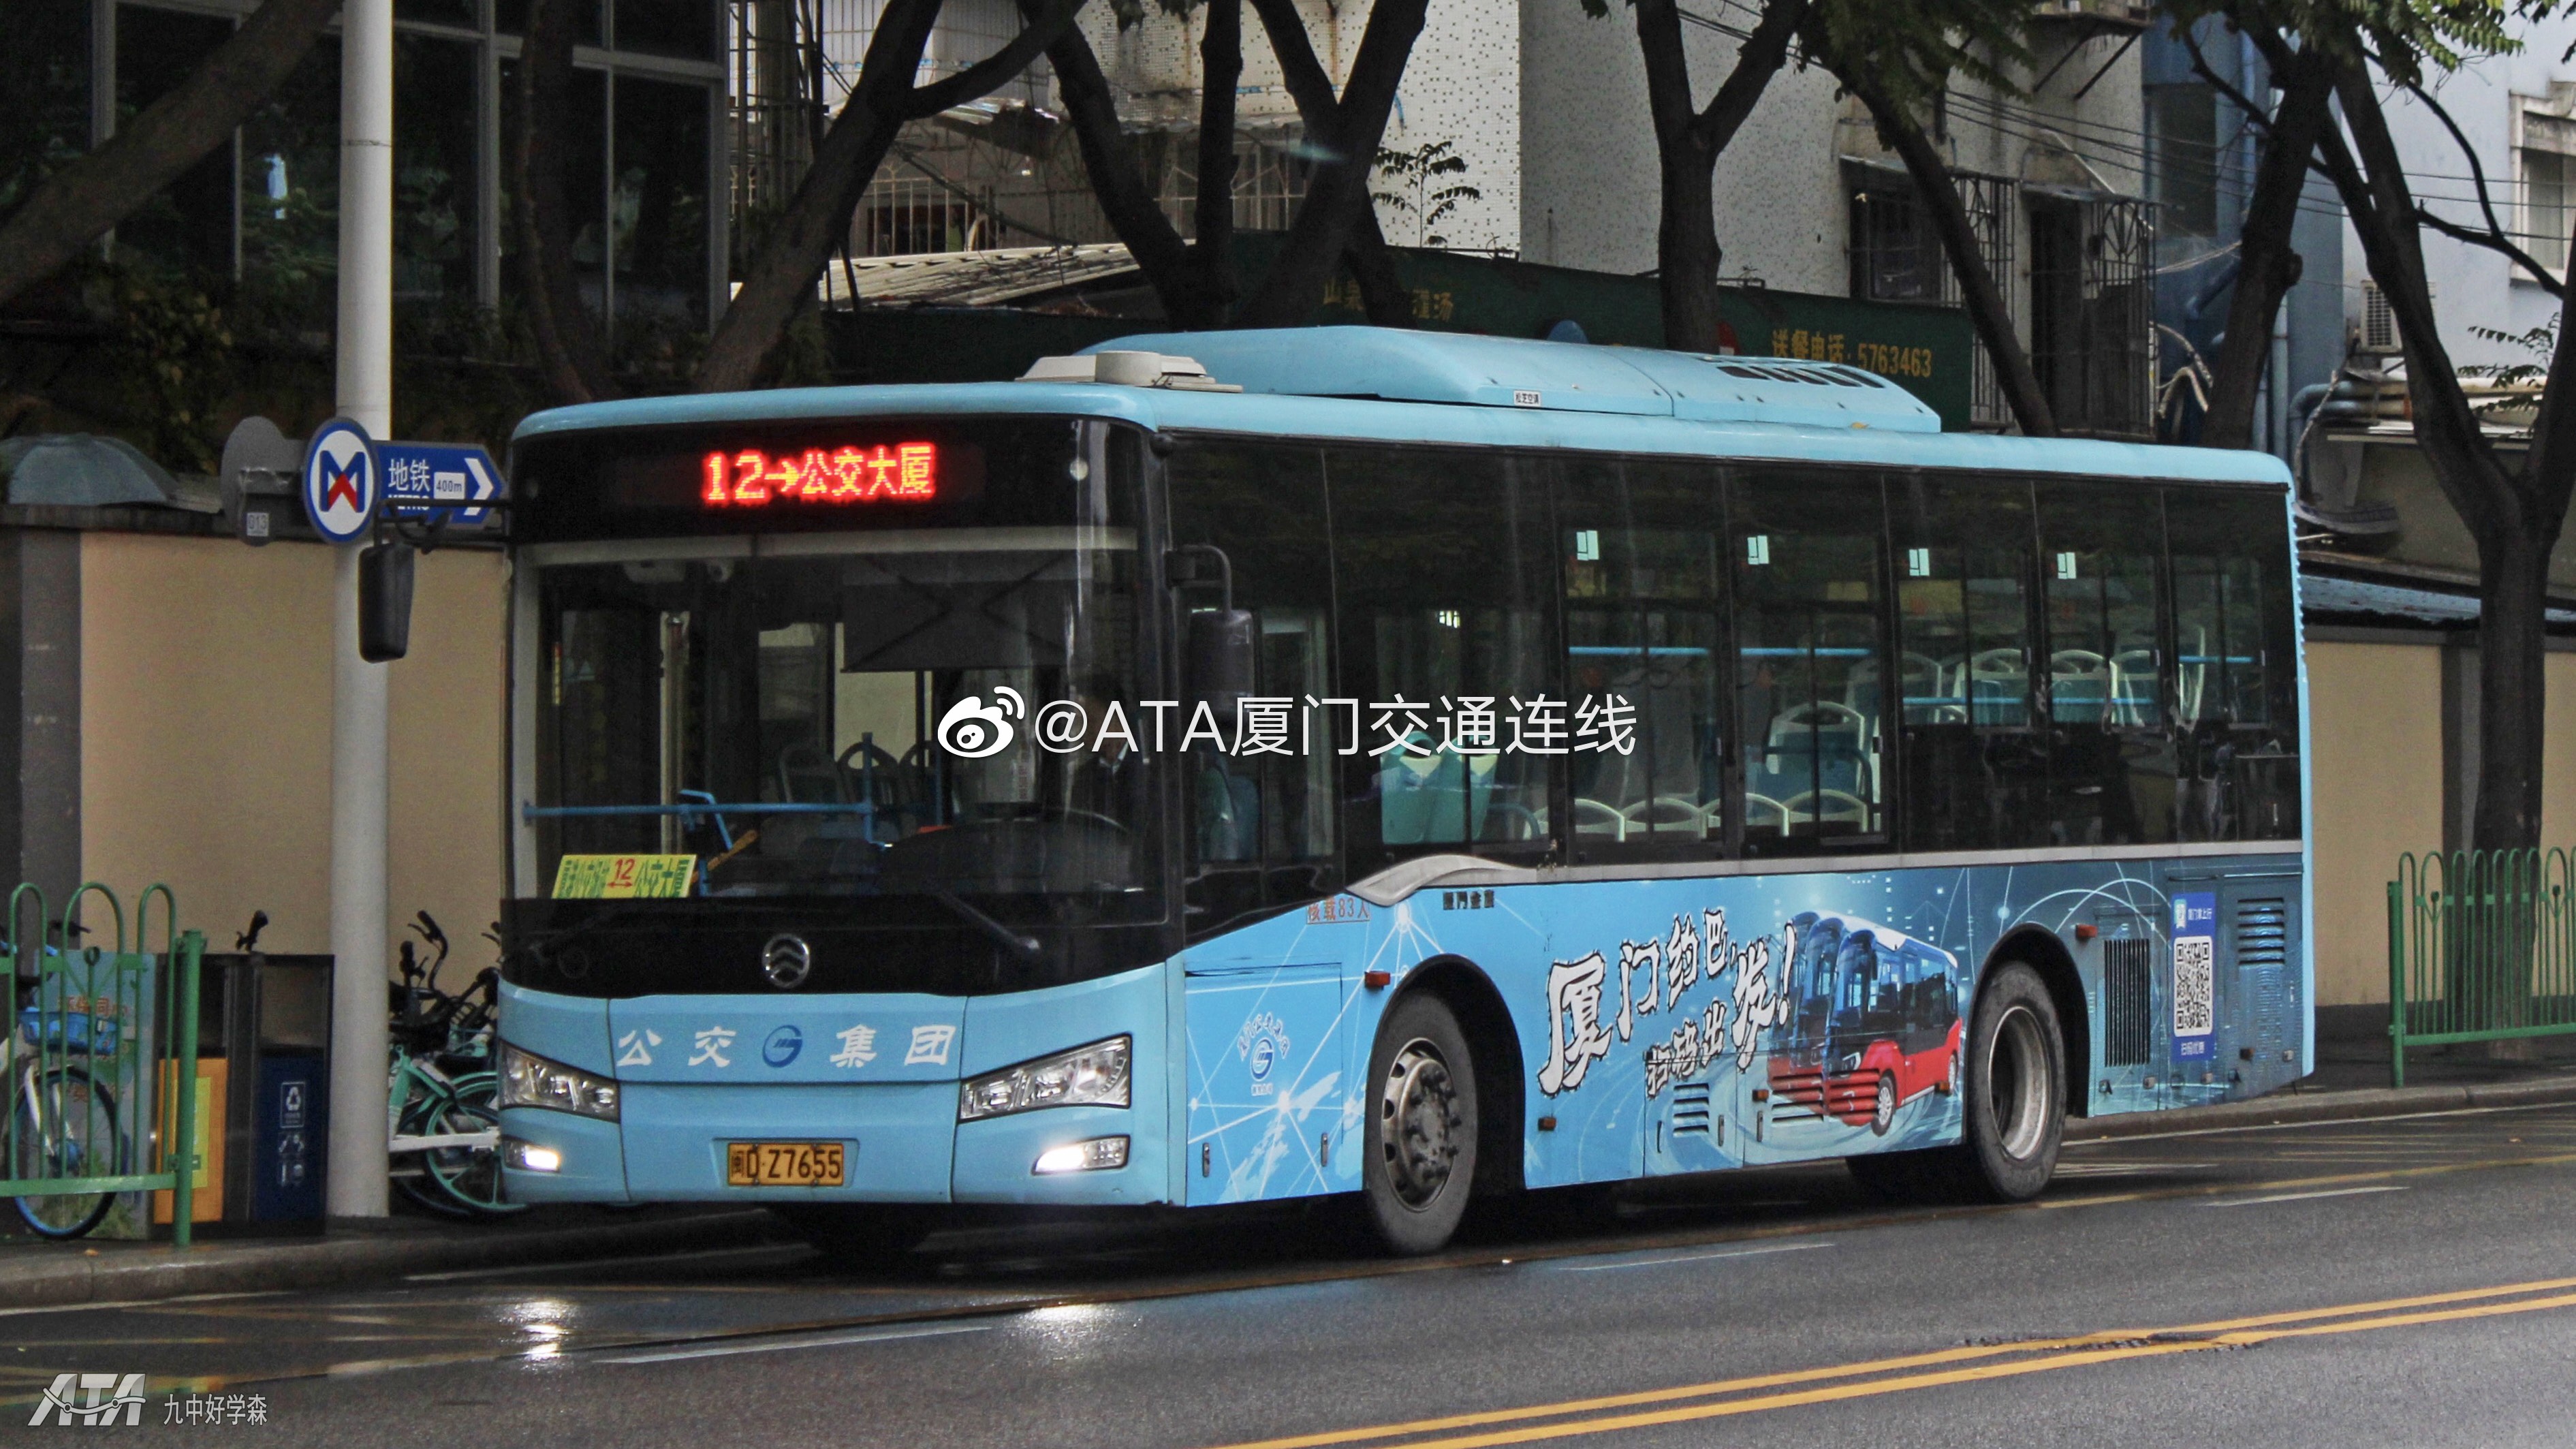 漳浦县天然气动力环保公交车投用 分3路和8路公交线-闽南网